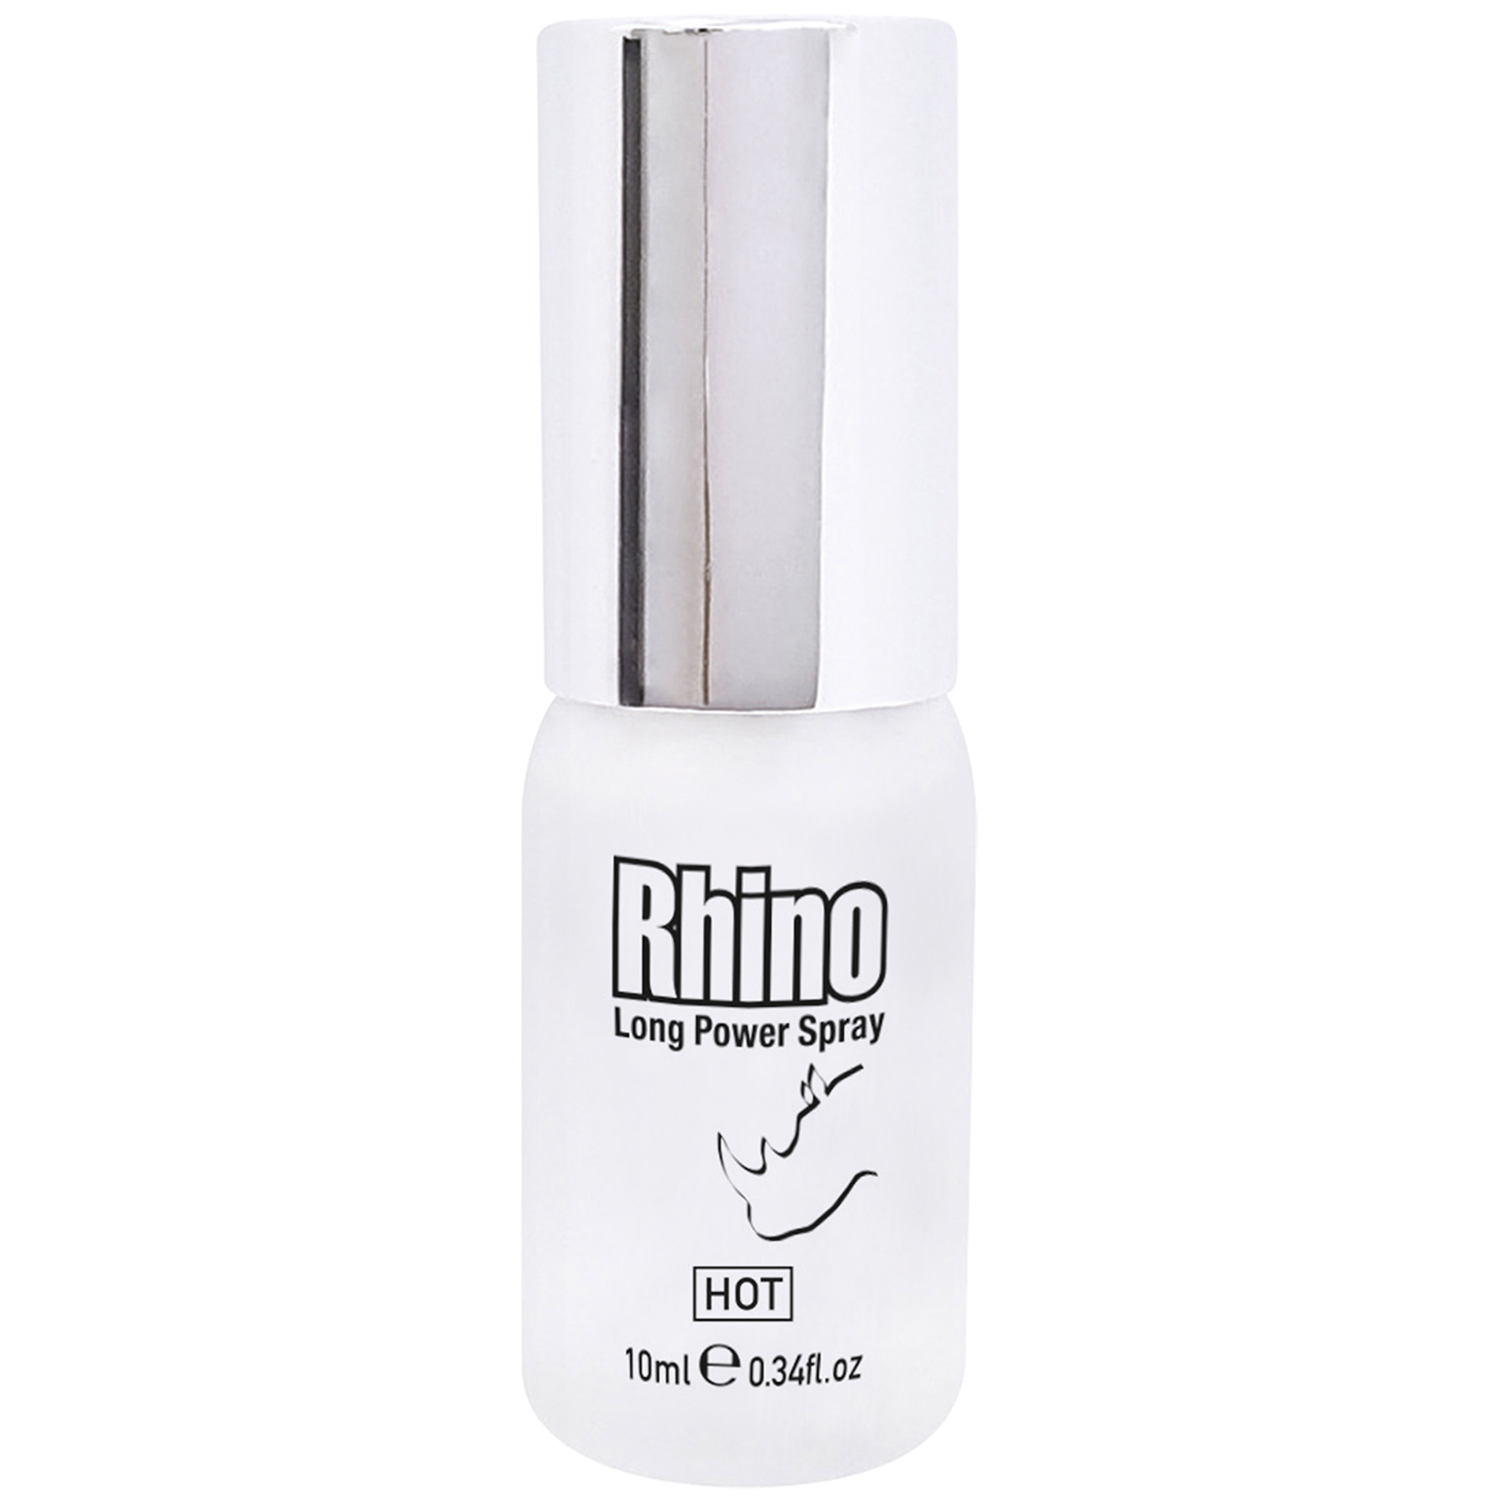 Hot Rhino Long Power Spray 10 ml  - Klar